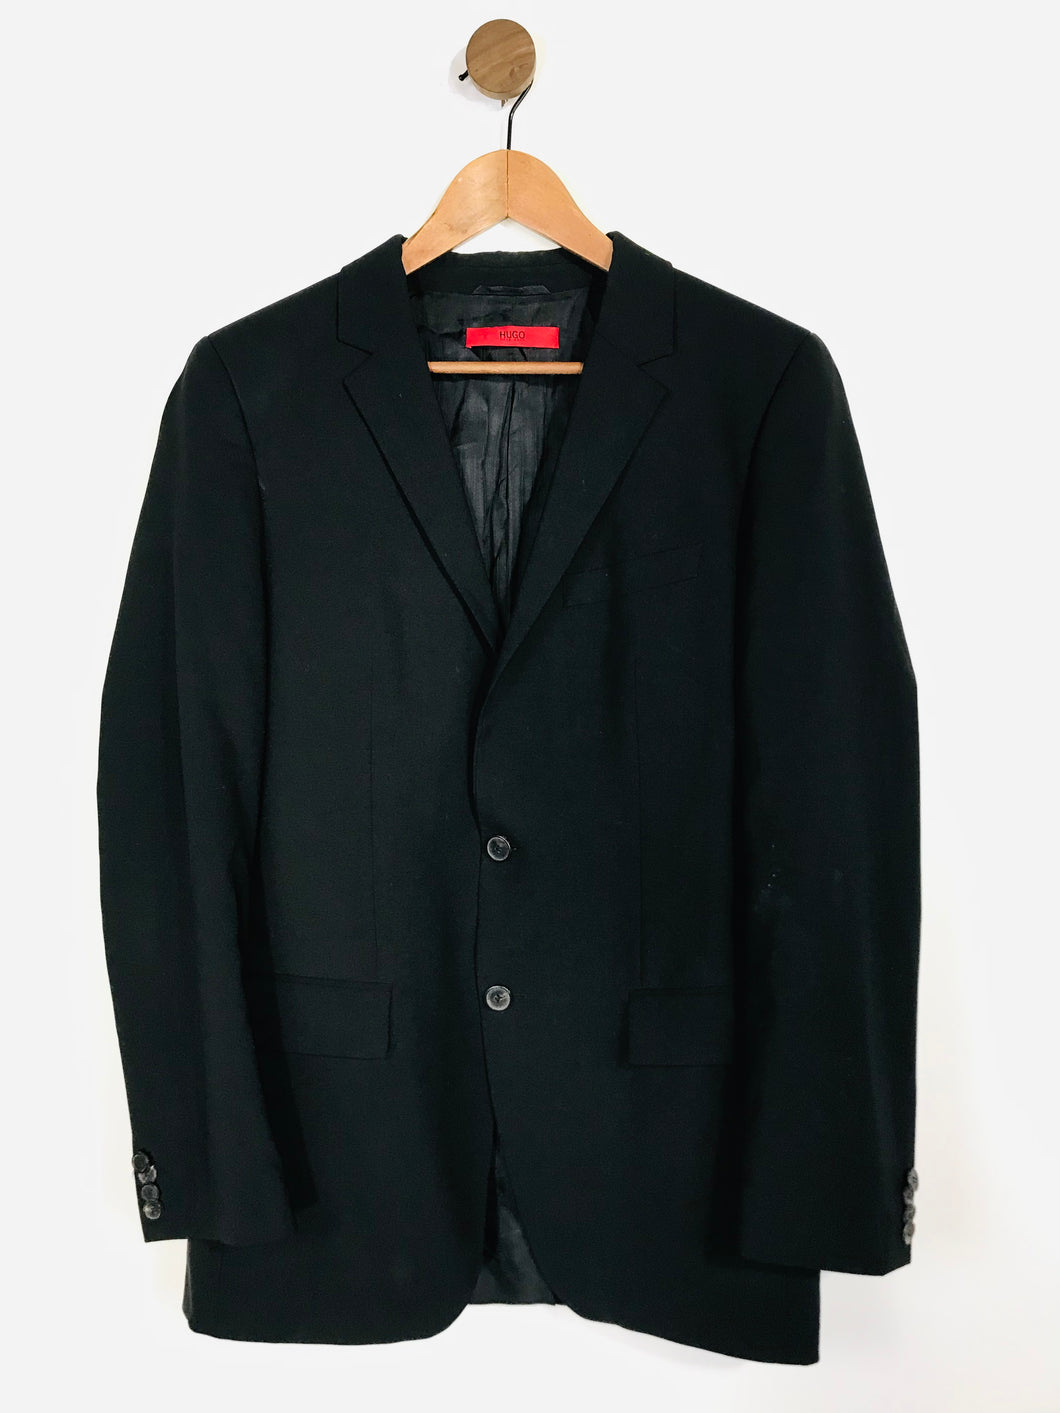 Hugo Boss Men's Wool Blazer Jacket | IT94 38 | Black